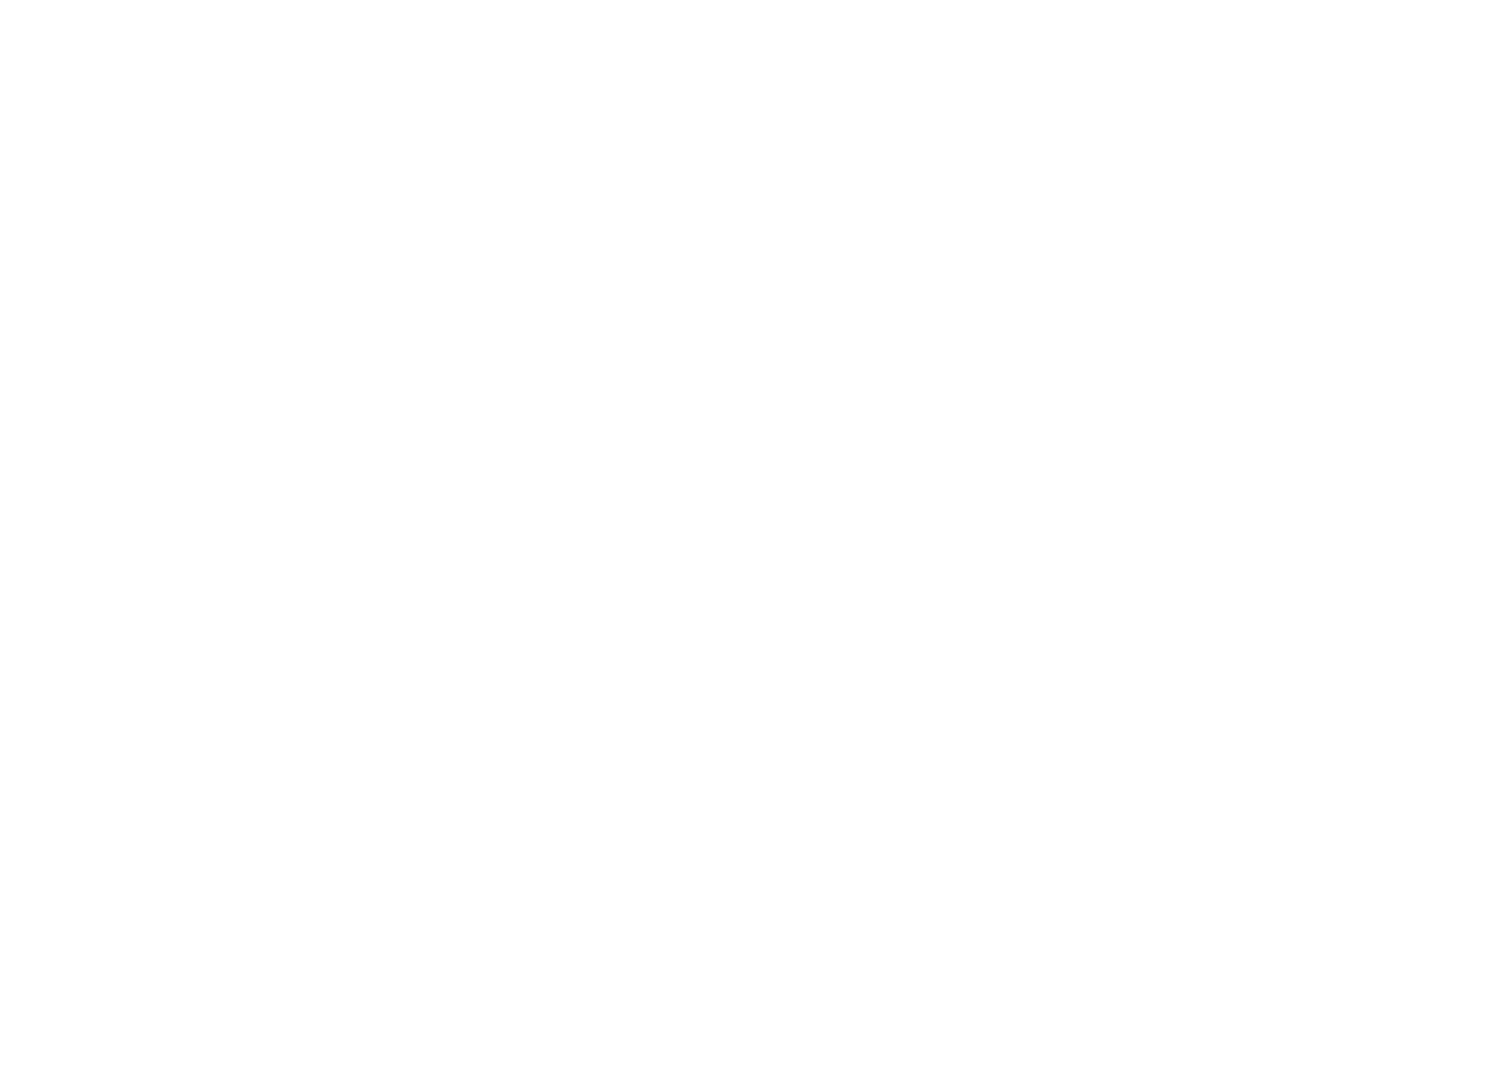 Ashley von Schulman Photography